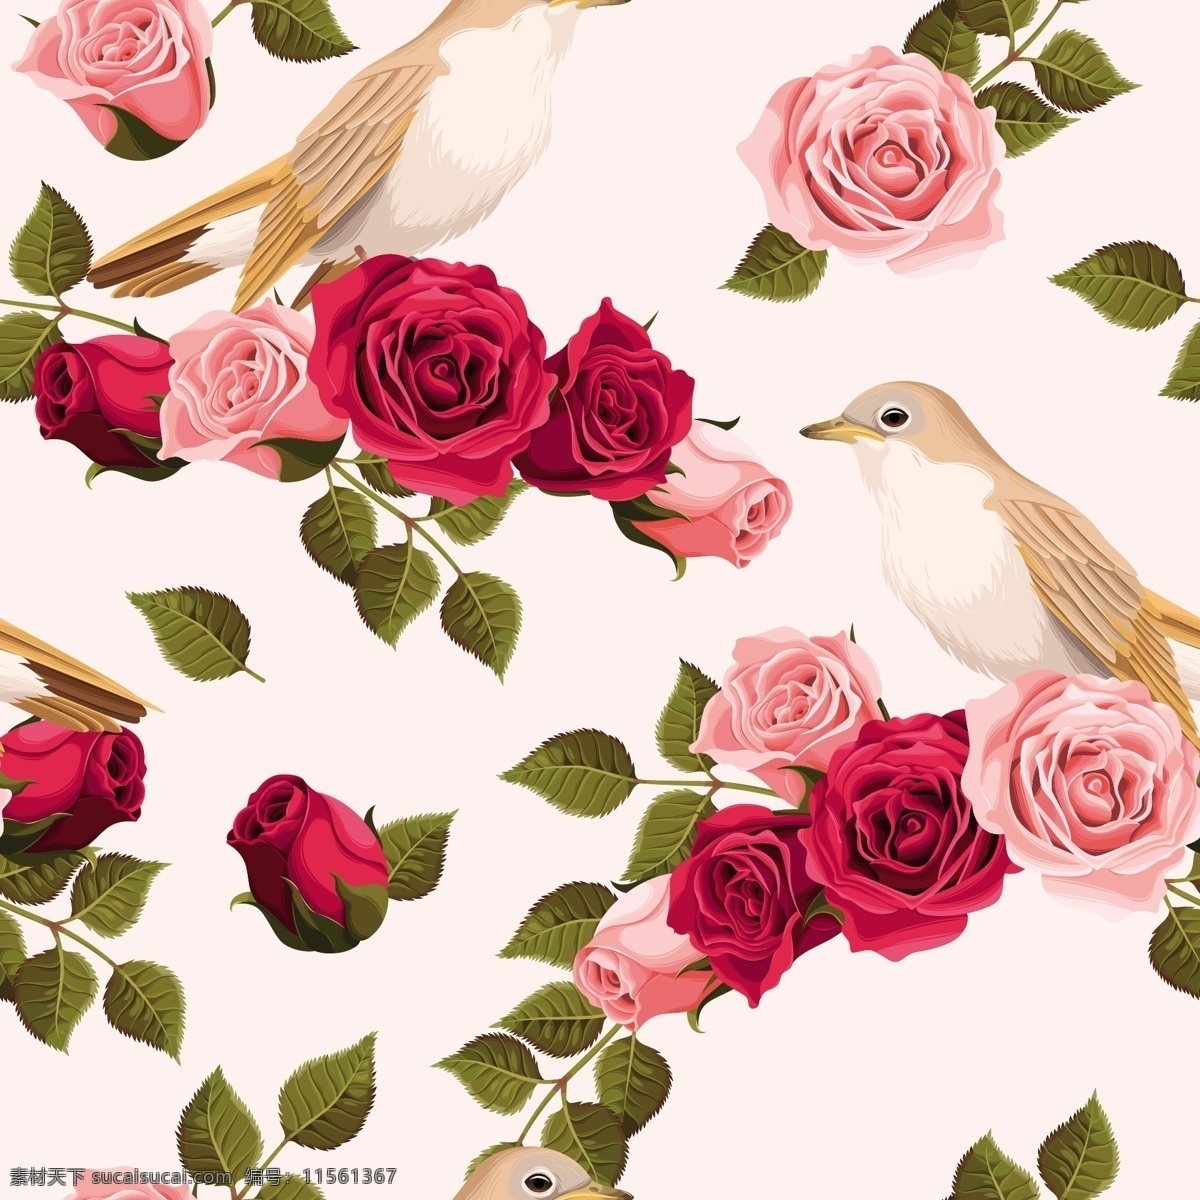 粉色 系 玫瑰花 纹理 图案 矢量 背景 小鸟 花鸟背景 广告背景 粉红色